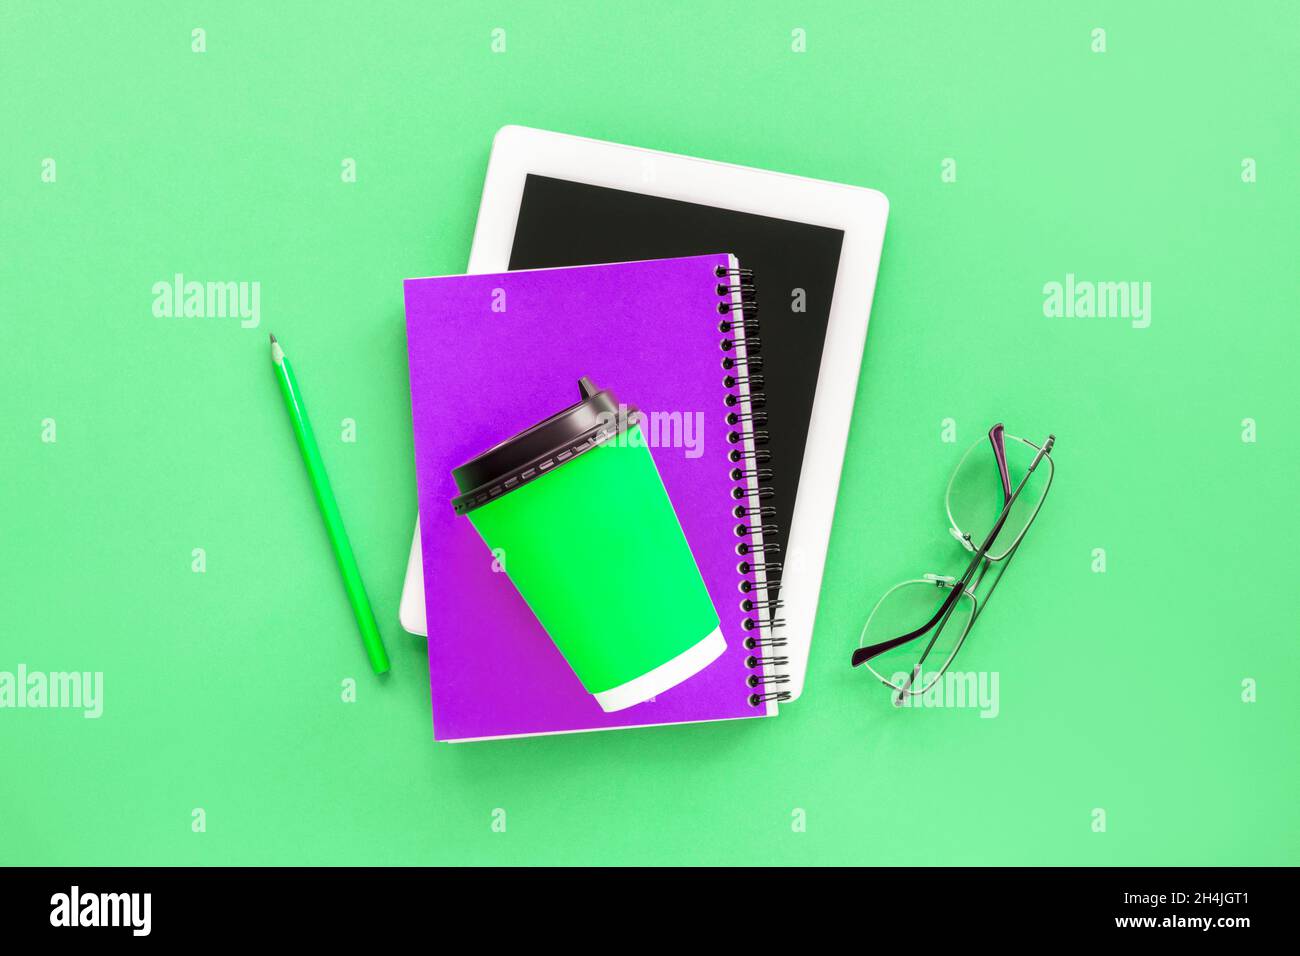 Computer tablet, blocco note viola, bicchieri e tazza di caffè verde sul tavolo verde. Concetto di studio. Vista dall'alto, piatto. Foto Stock